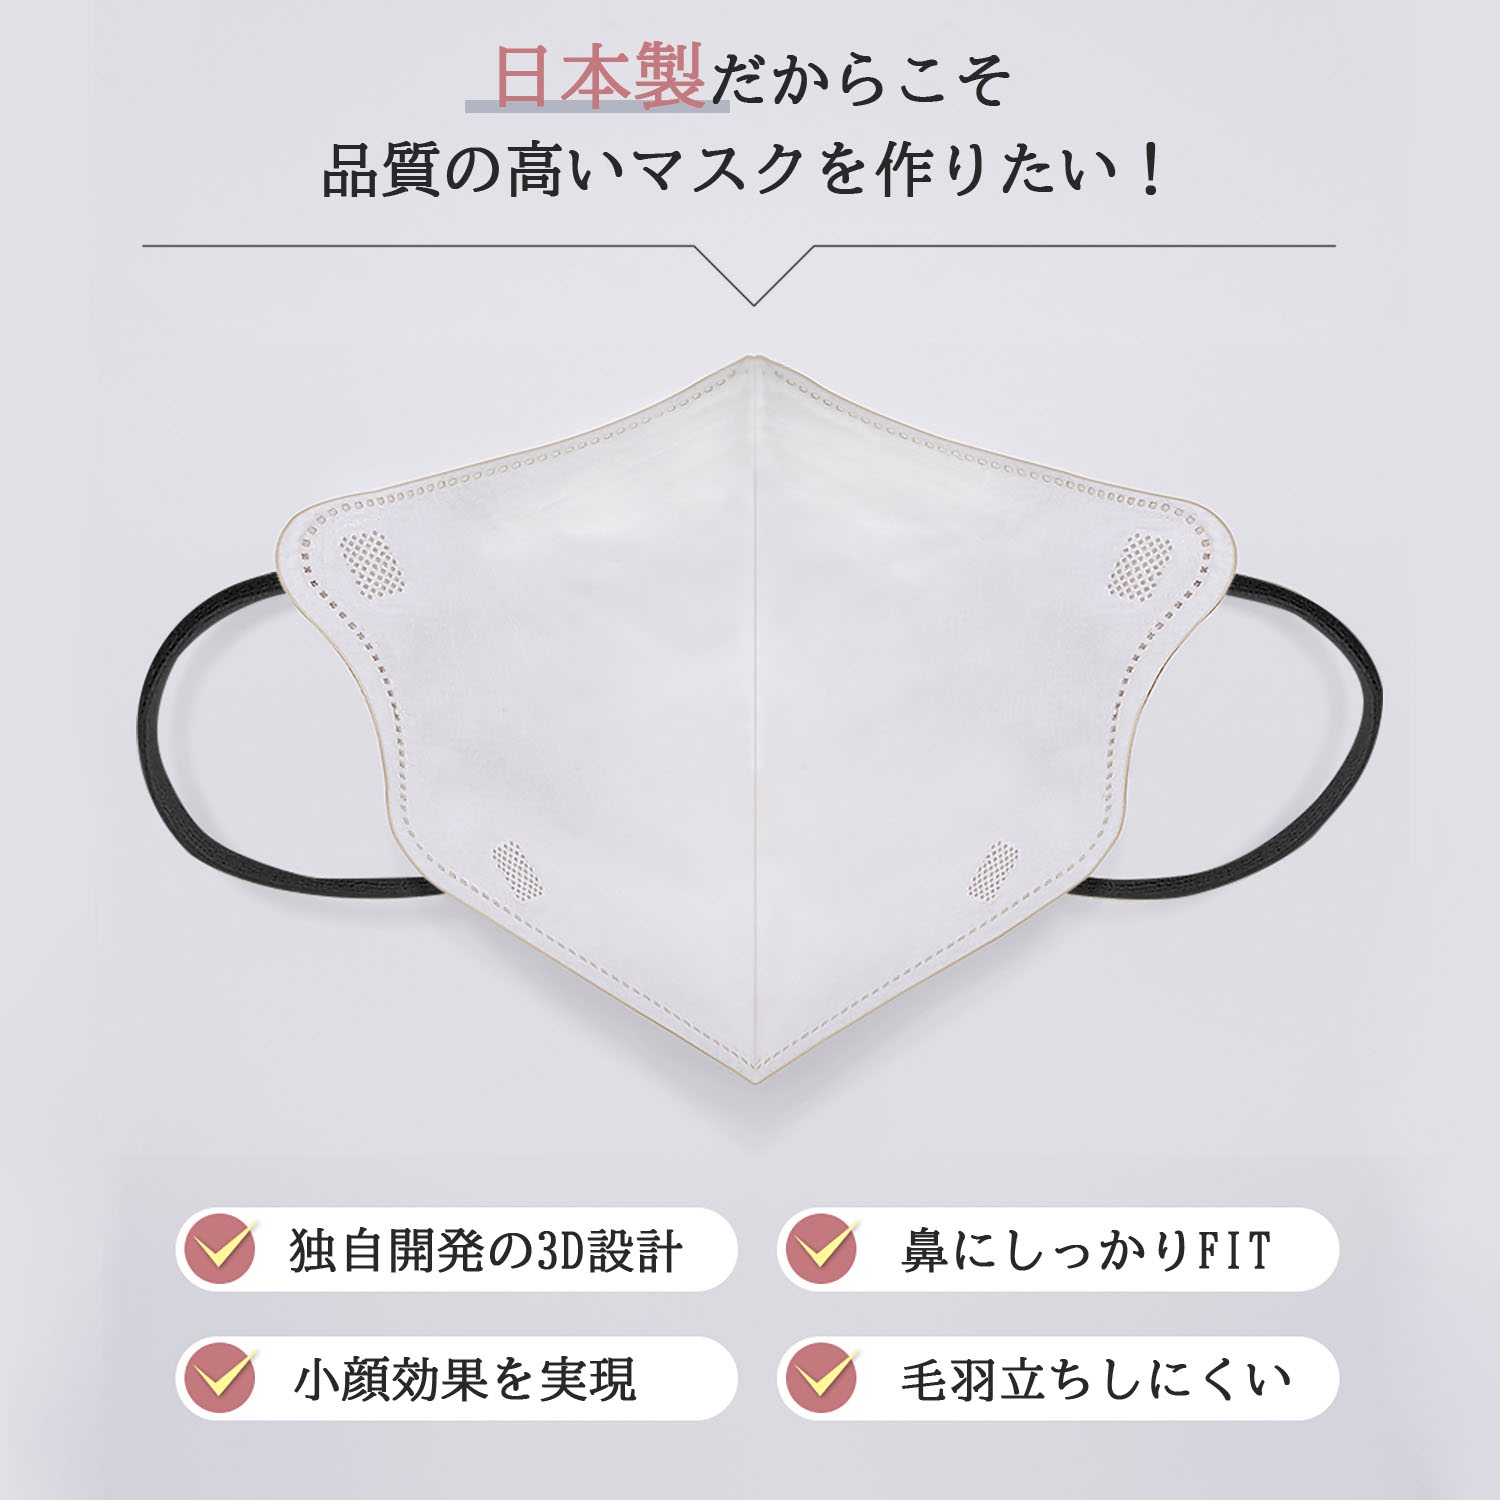 立体マスク 3D 不織布 日本製 カラー くちばし 20枚(10枚入*2袋) 小顔 使い捨て メガネが曇りにくい 呼吸しやすい 口紅に付かない 耳が痛くならない 熱中症対策917537